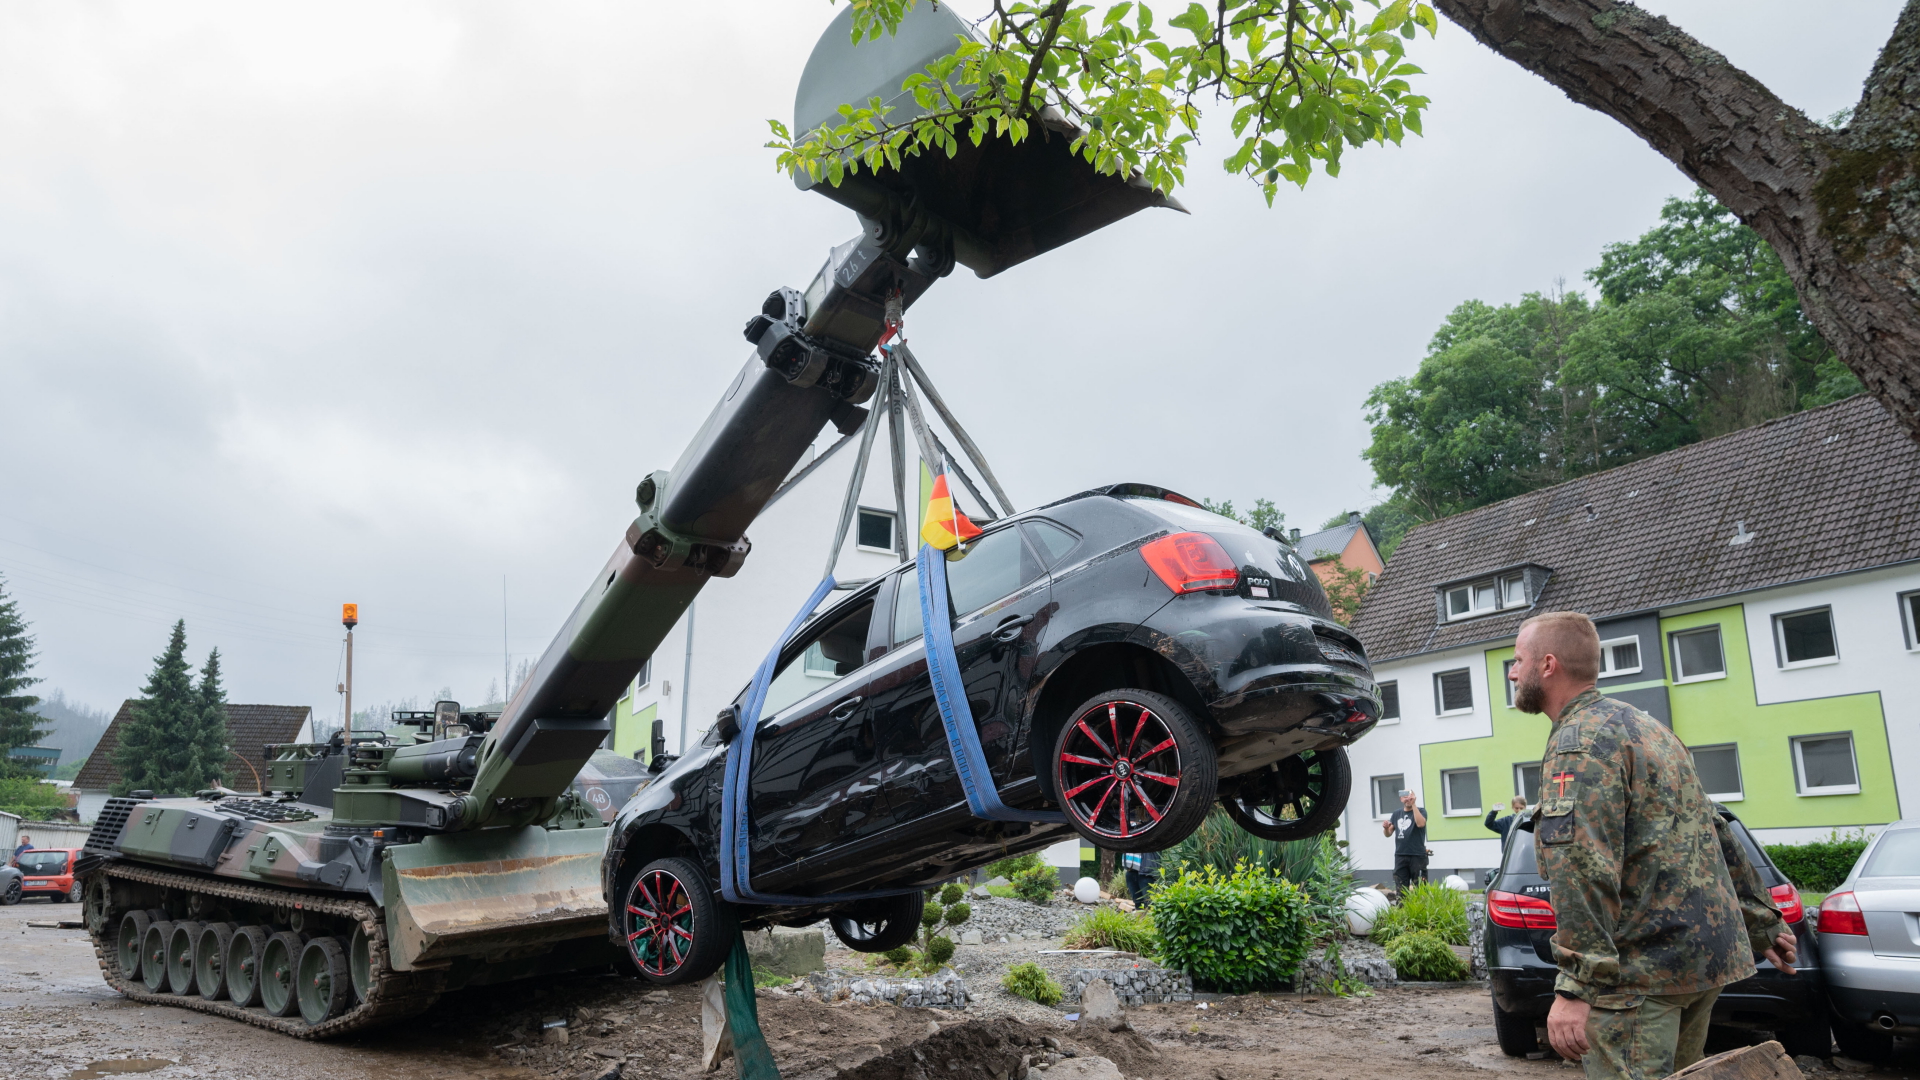 Soldaten der Bundeswehr bergen mit einem Pionierpanzer Dachs ein zerstörtes Auto bei den Aufräumarbeiten der schweren Unwetterschäden in Hagen. | dpa